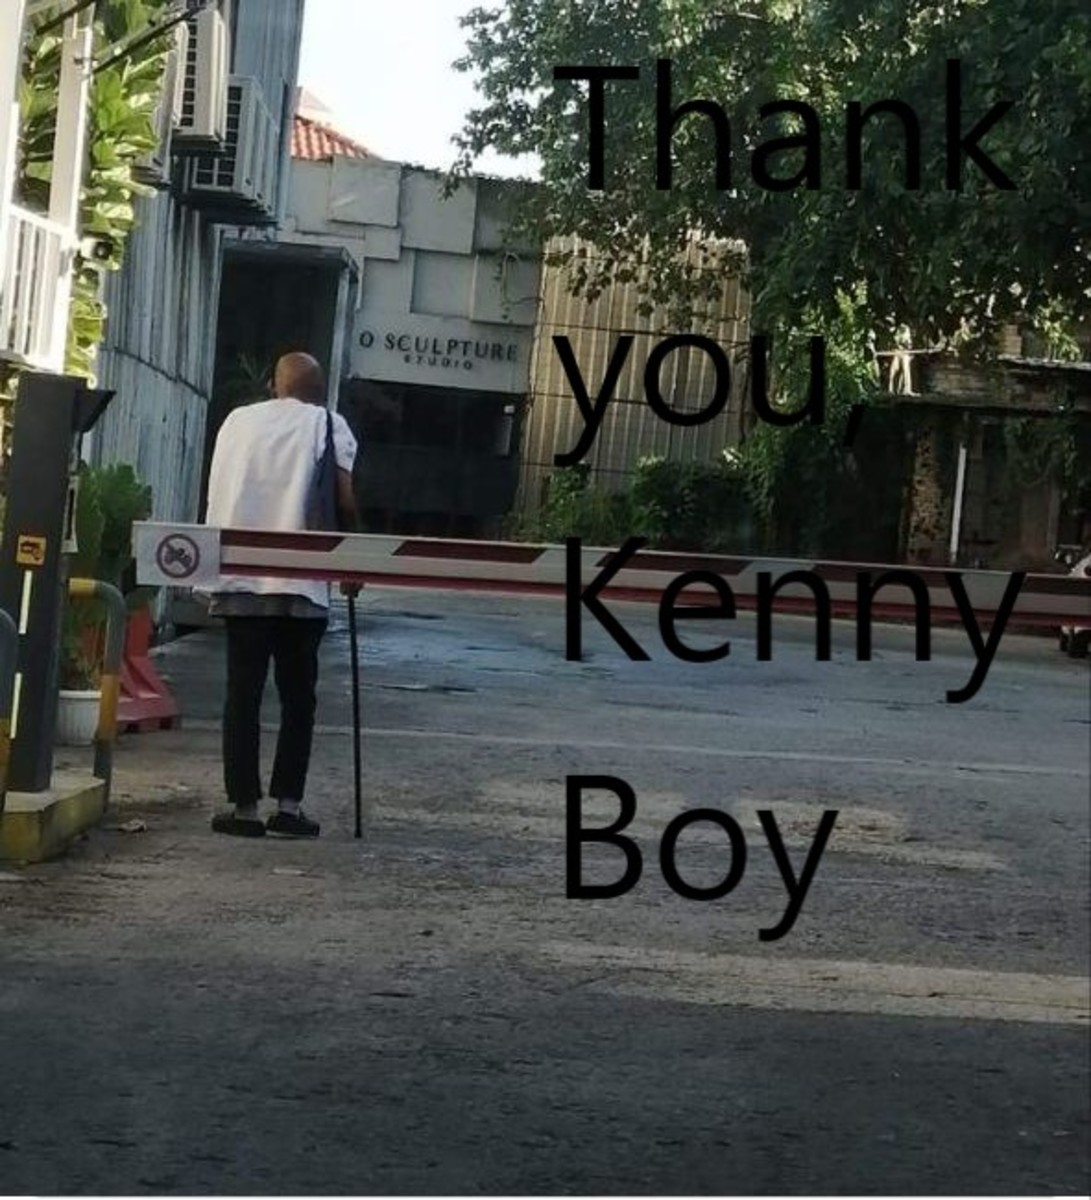 Thank you, Kenny Boy